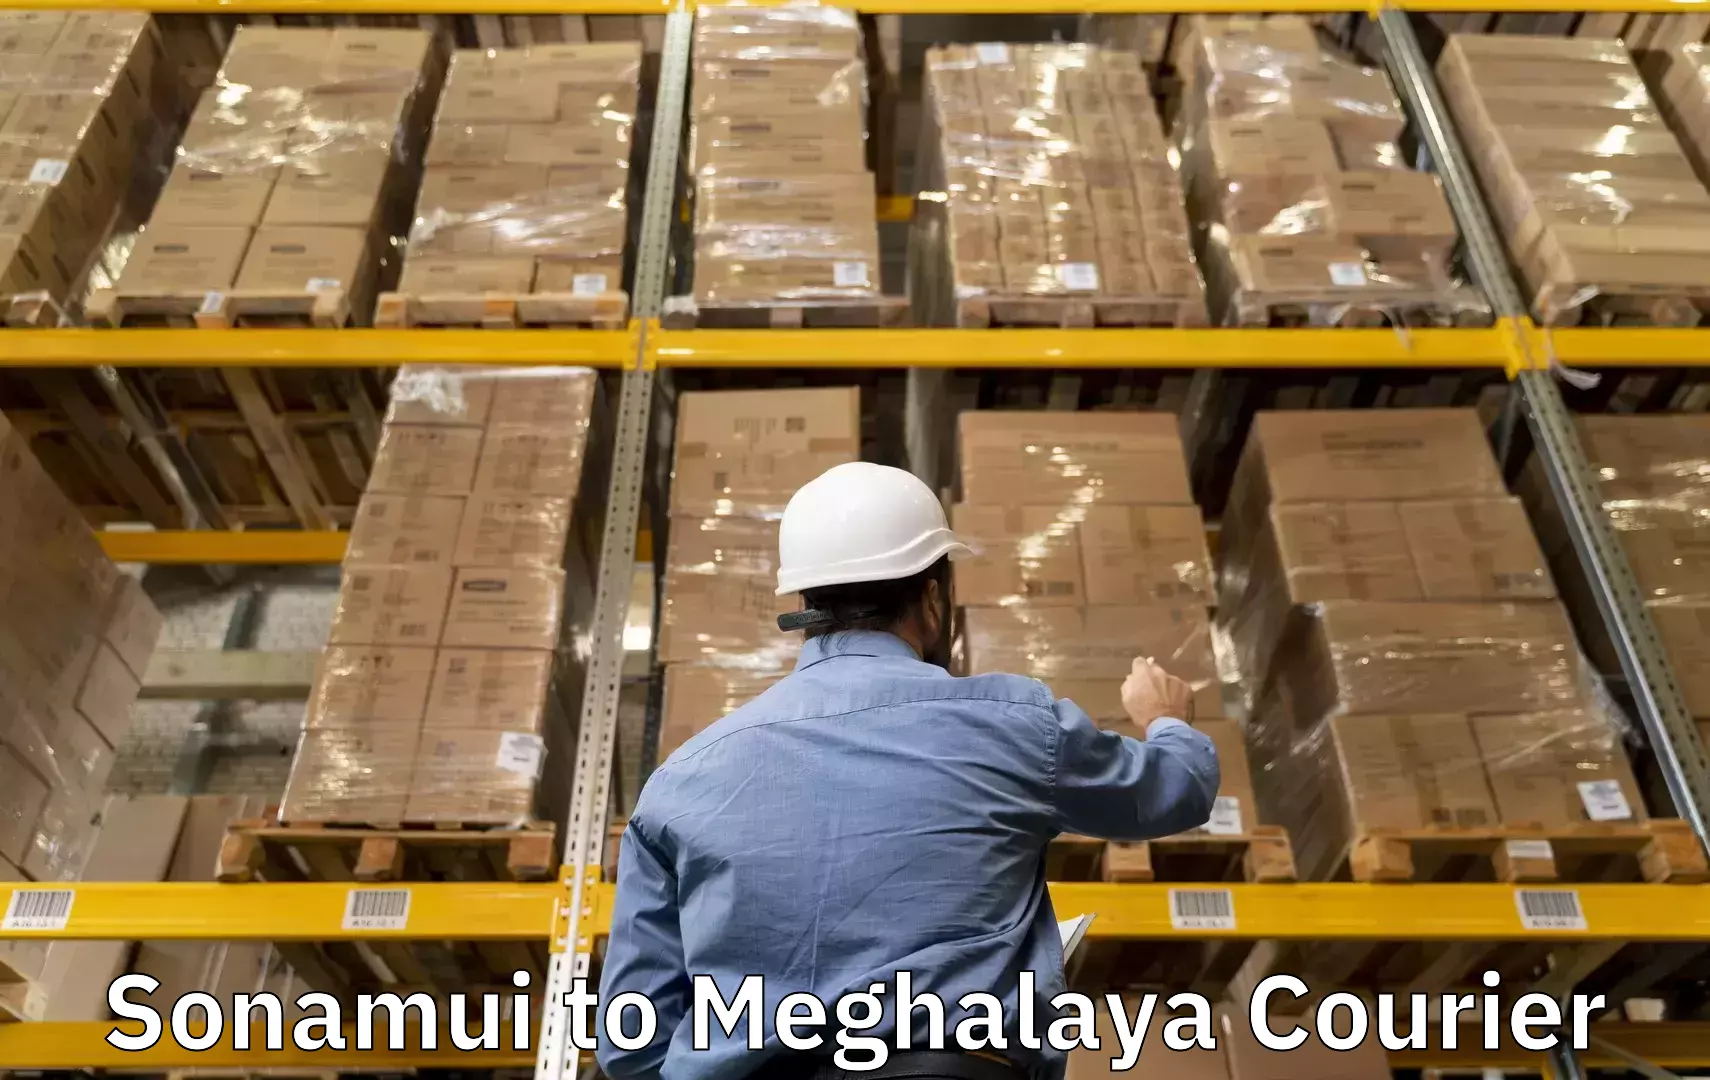 Luggage shipping service Sonamui to Meghalaya